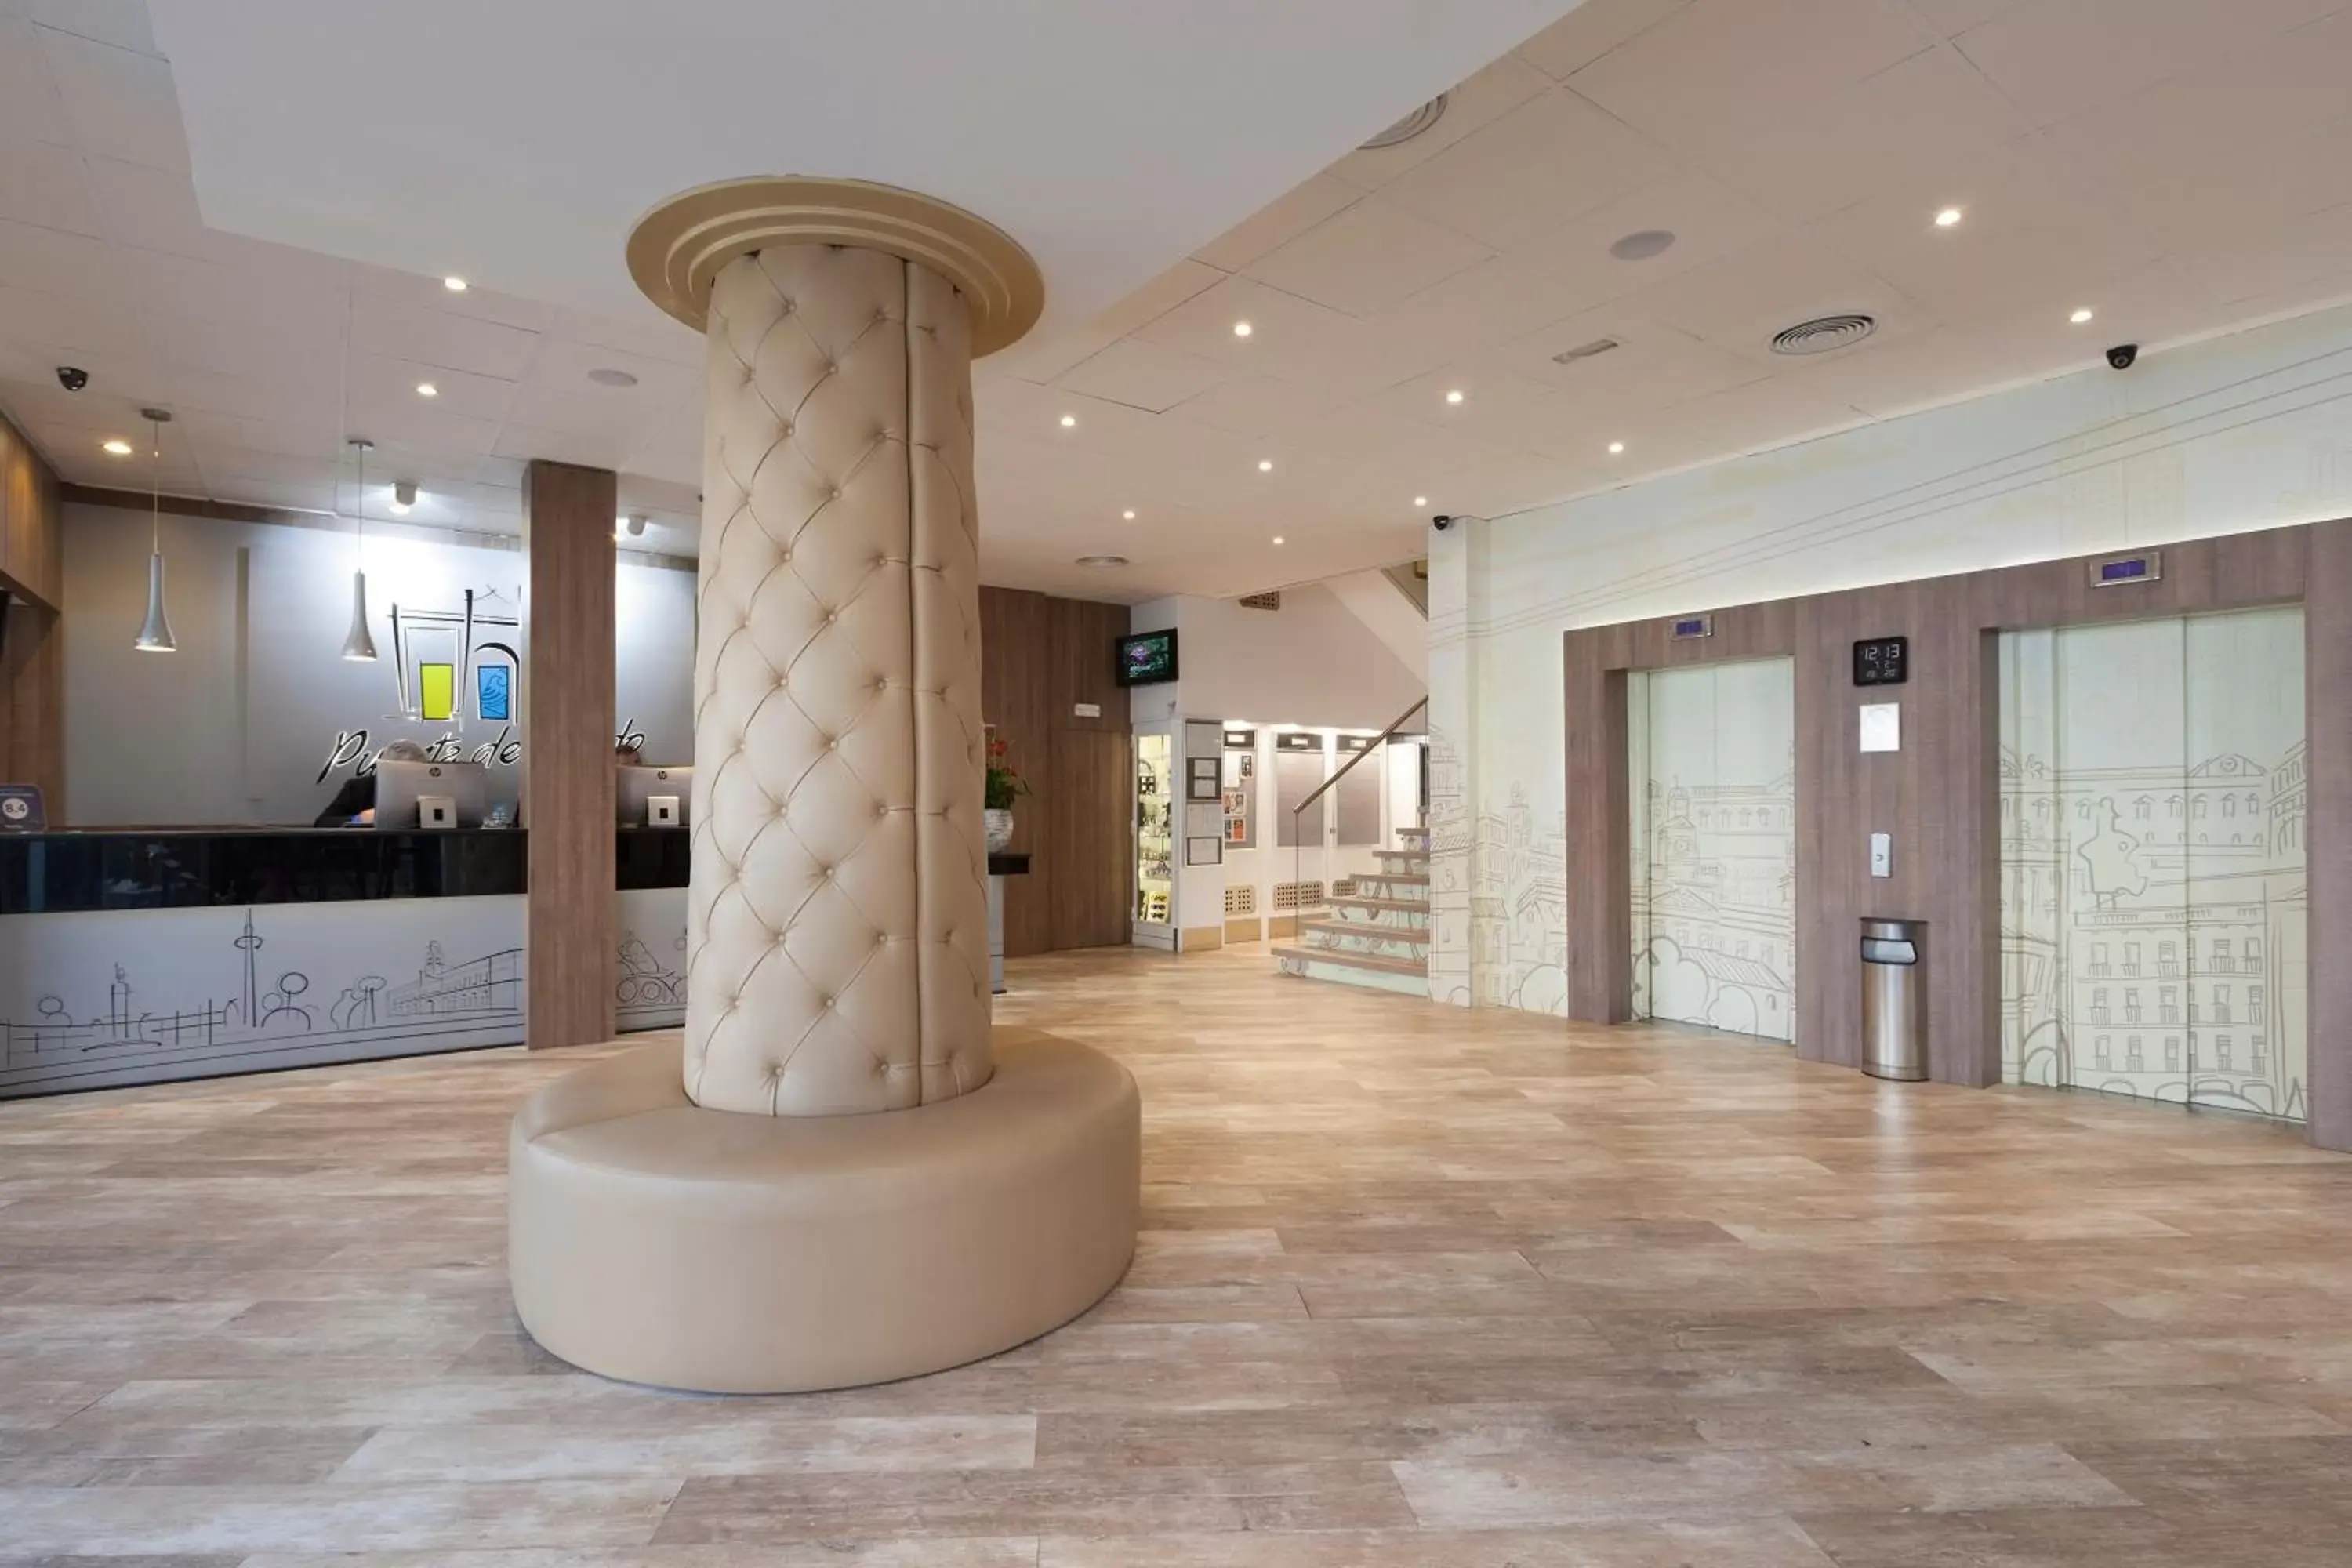 Lobby or reception, Lobby/Reception in Hotel Puerta de Toledo